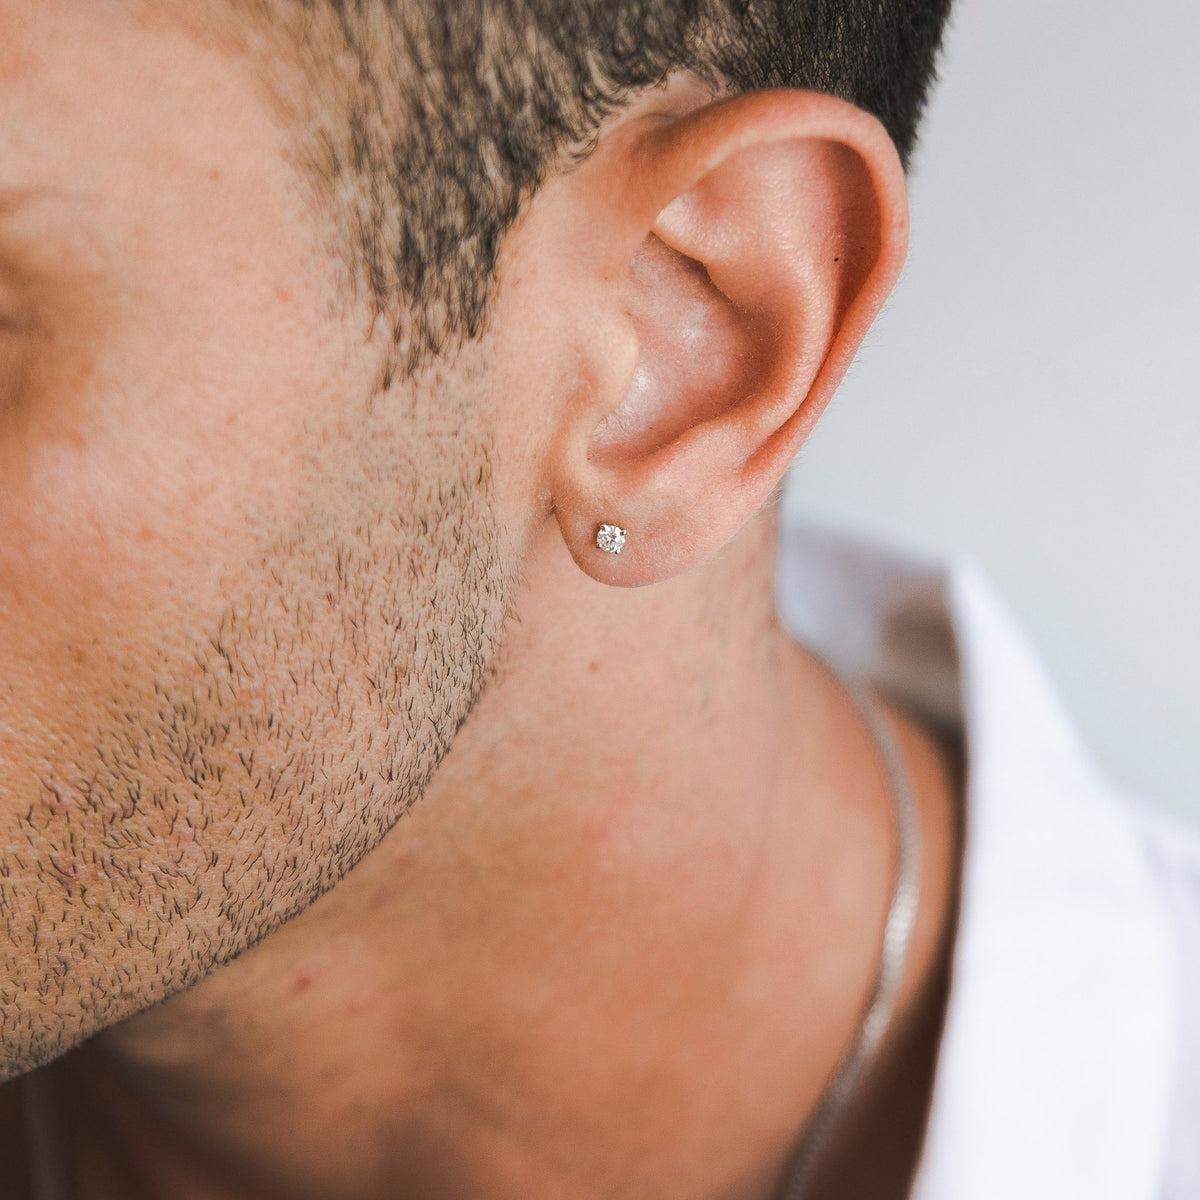 Boucles d'oreilles pour homme en or blanc 14 carats et diamant de 0,1 carat, par Shlomit Rogel.

Boucle d'oreille en diamant de 0,10 carat, avec un fermoir 